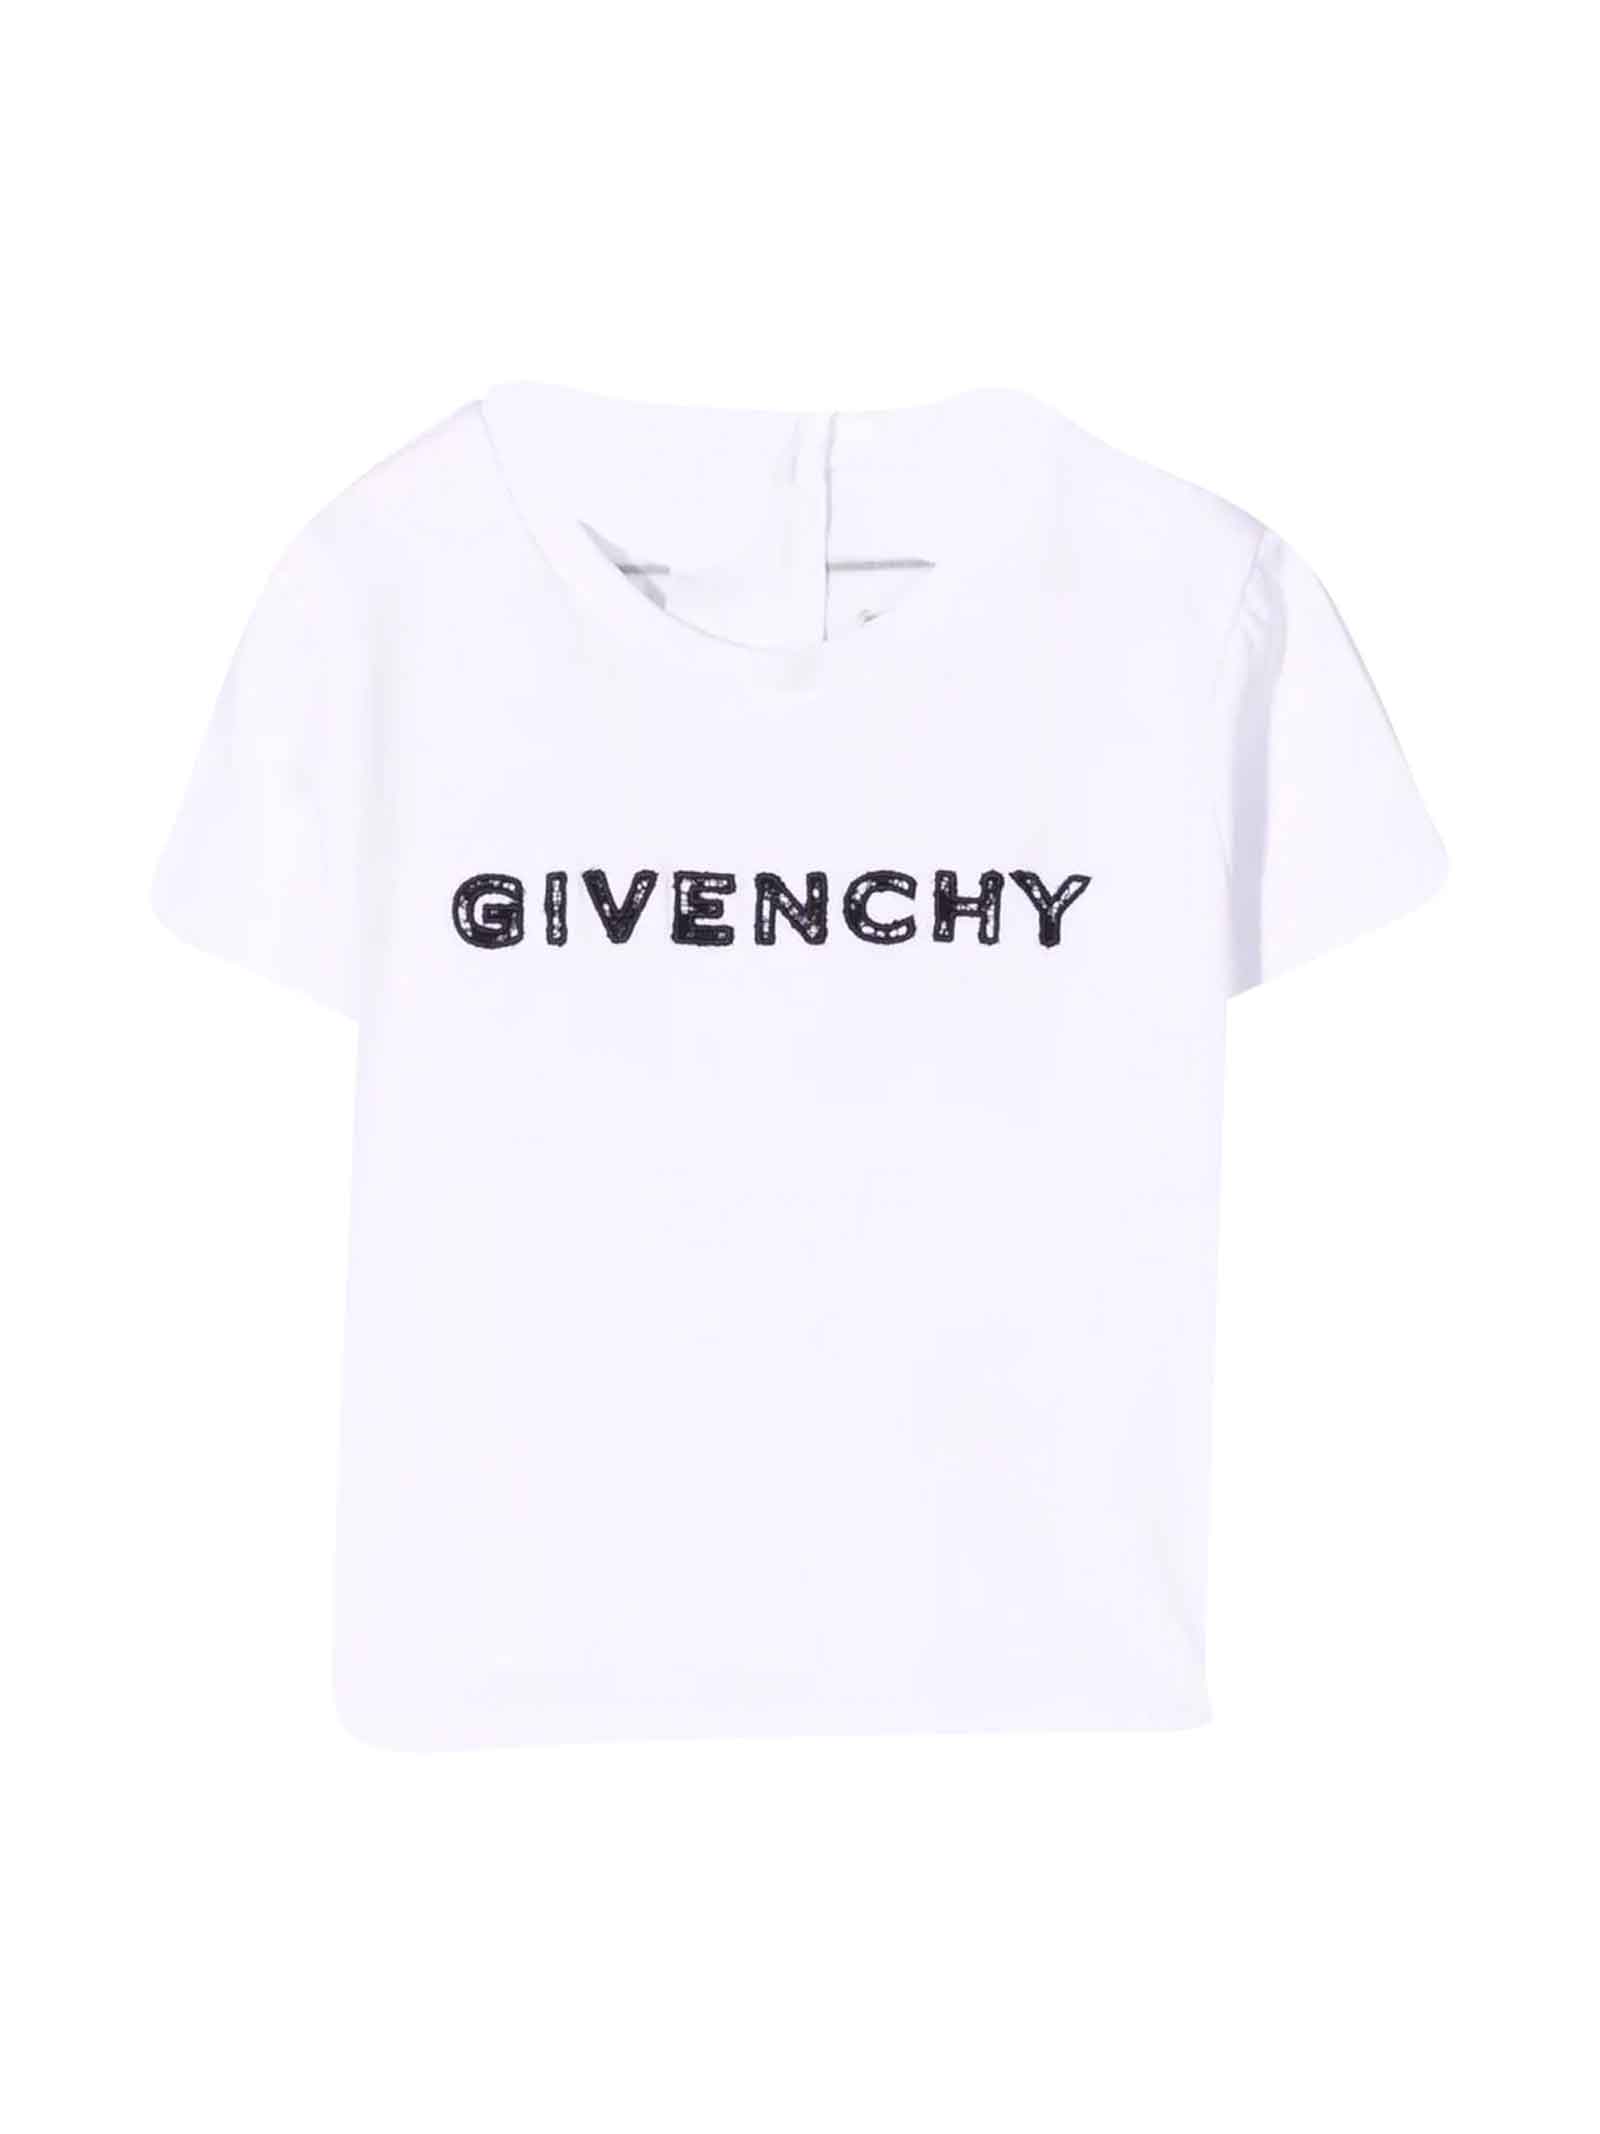 Givenchy White T-shirt Baby Unisex